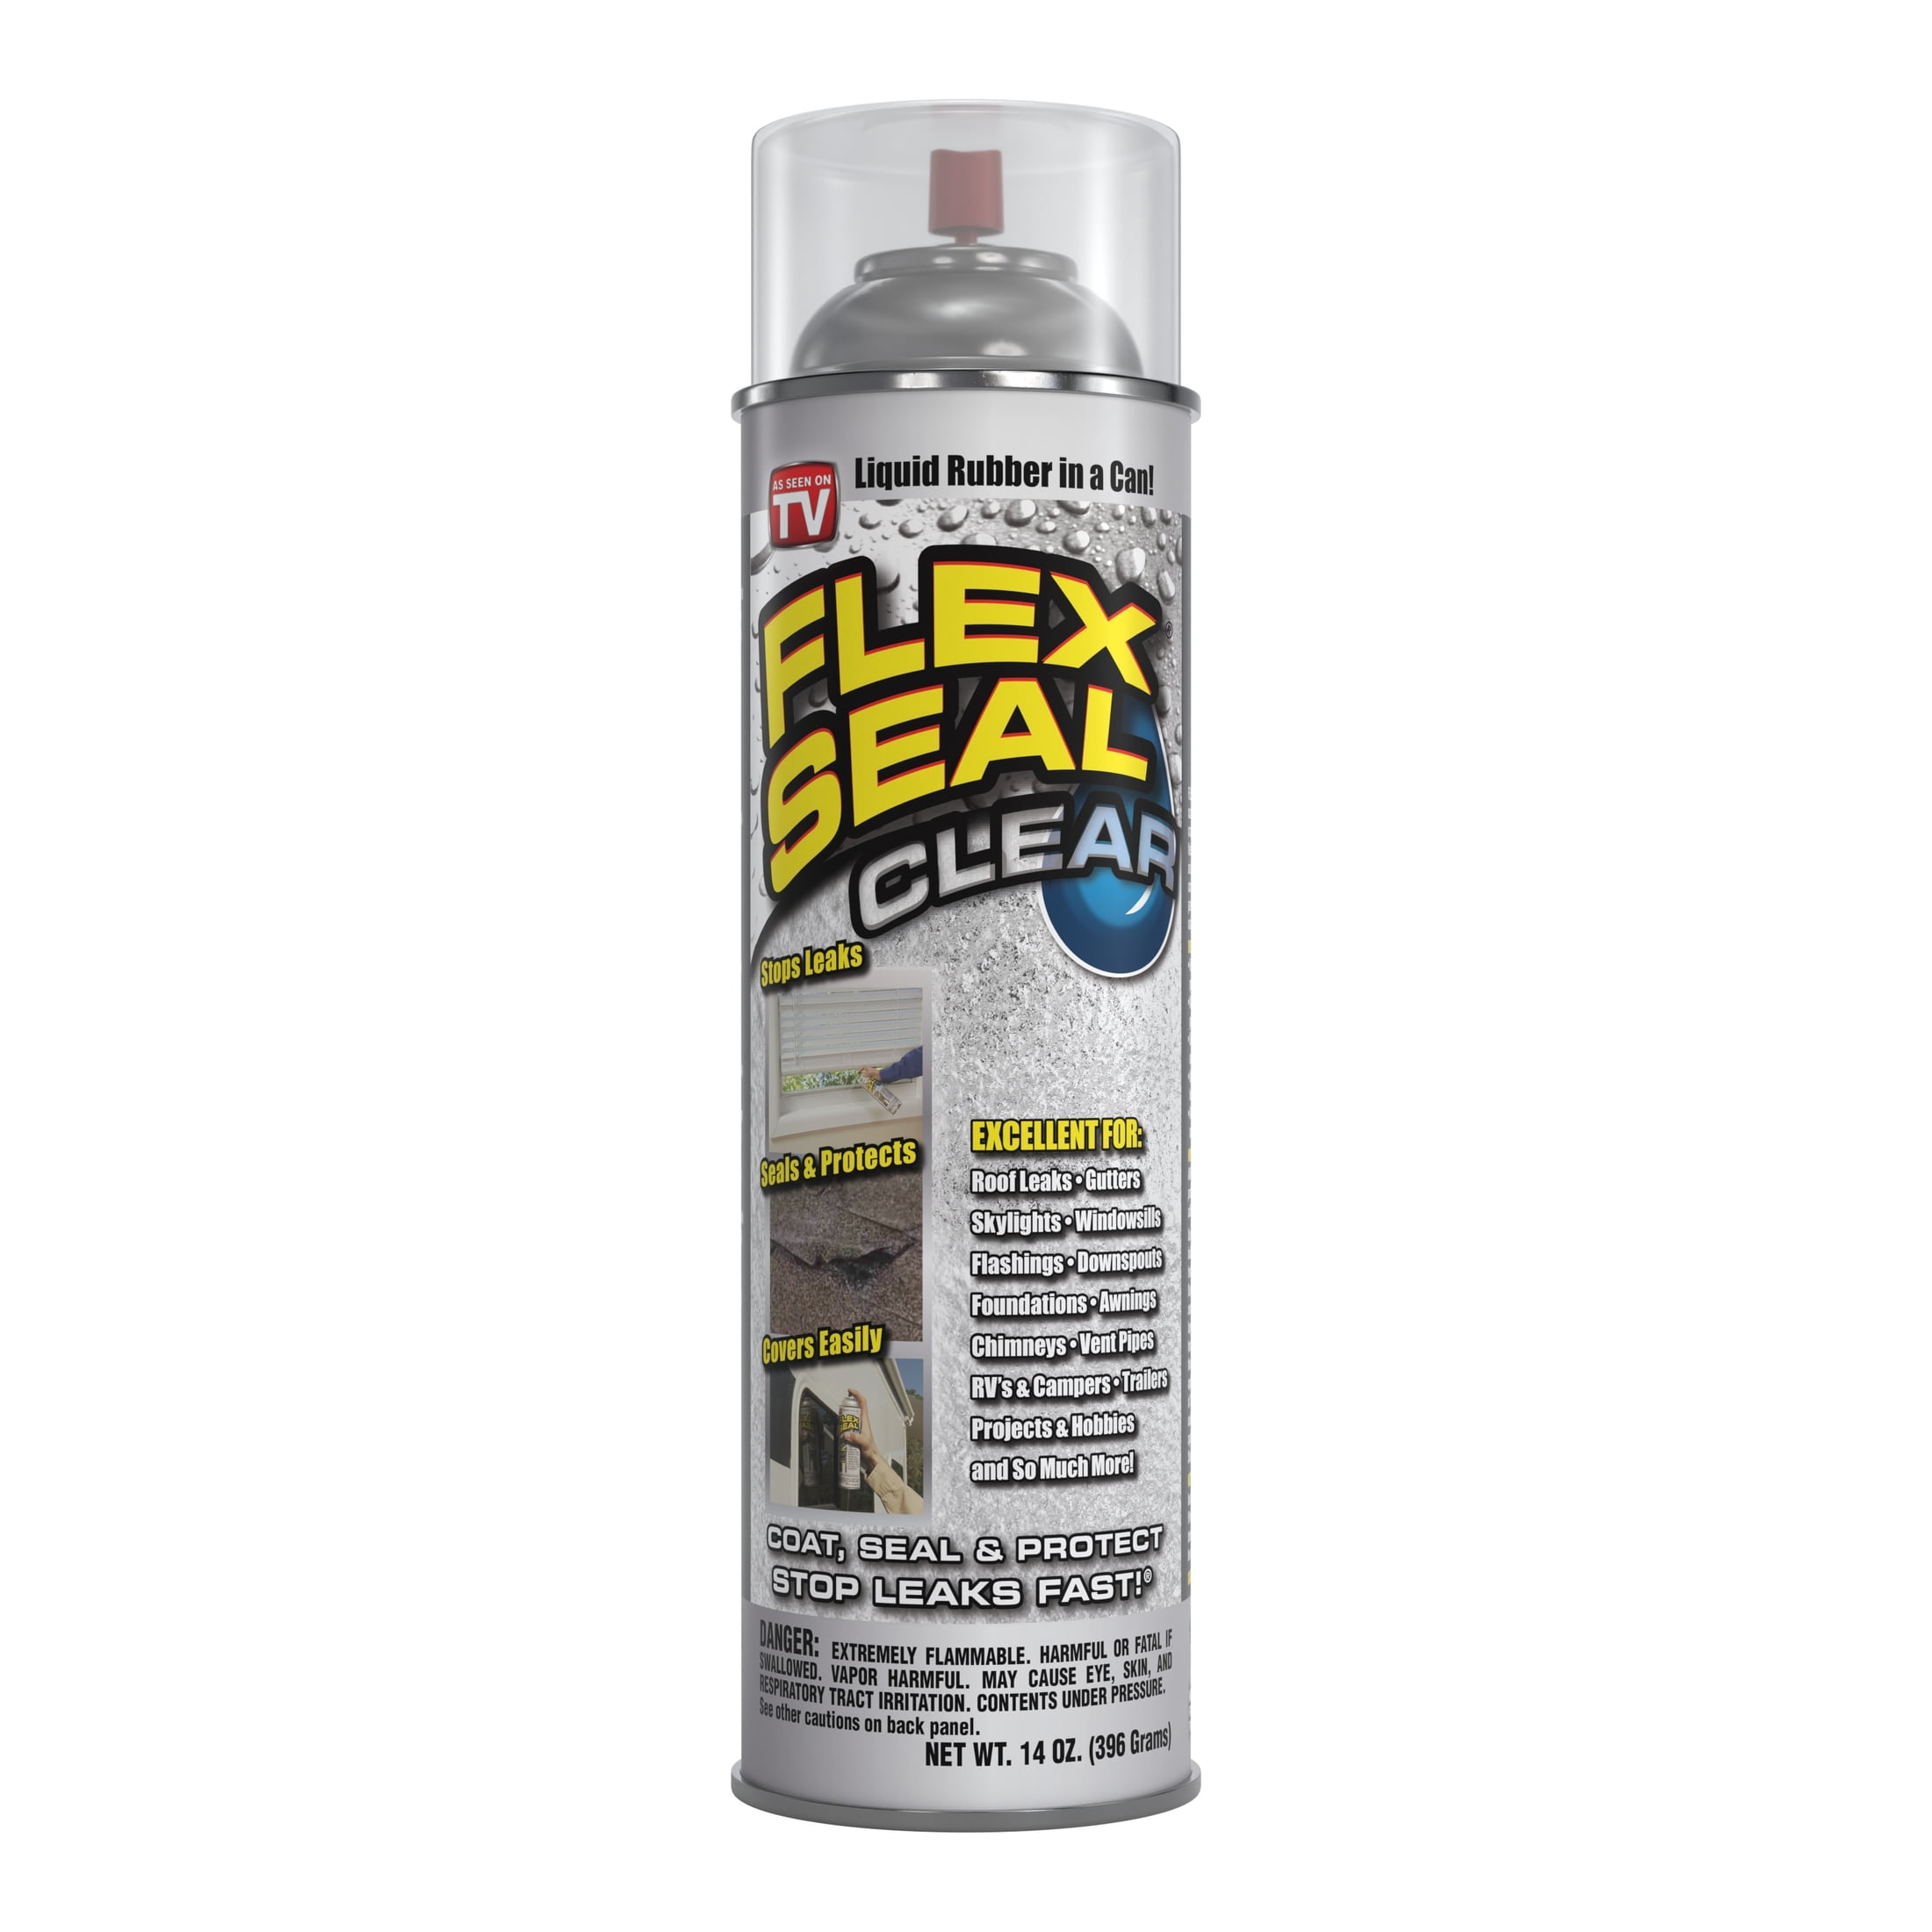 Flex Seal Aerosol Liquid Rubber Sealant Coating Oz Clear Walmart Com